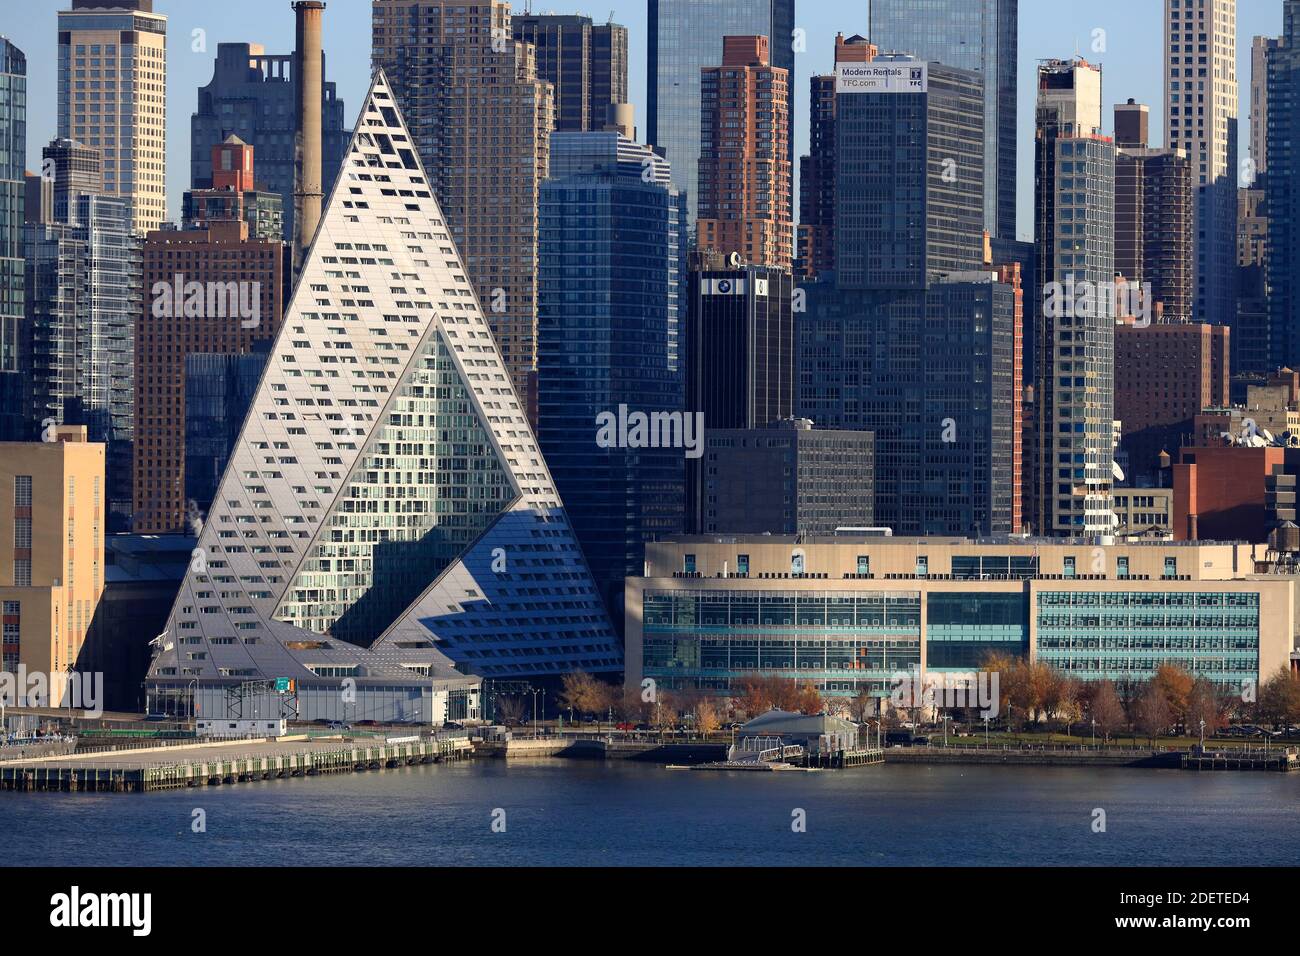 Vue sur Hell's Kitchen dans le quartier ouest de Midtown Manhattan avec la structure triangulaire VIA 57 West Apartment building.New York City.New York.USA Banque D'Images